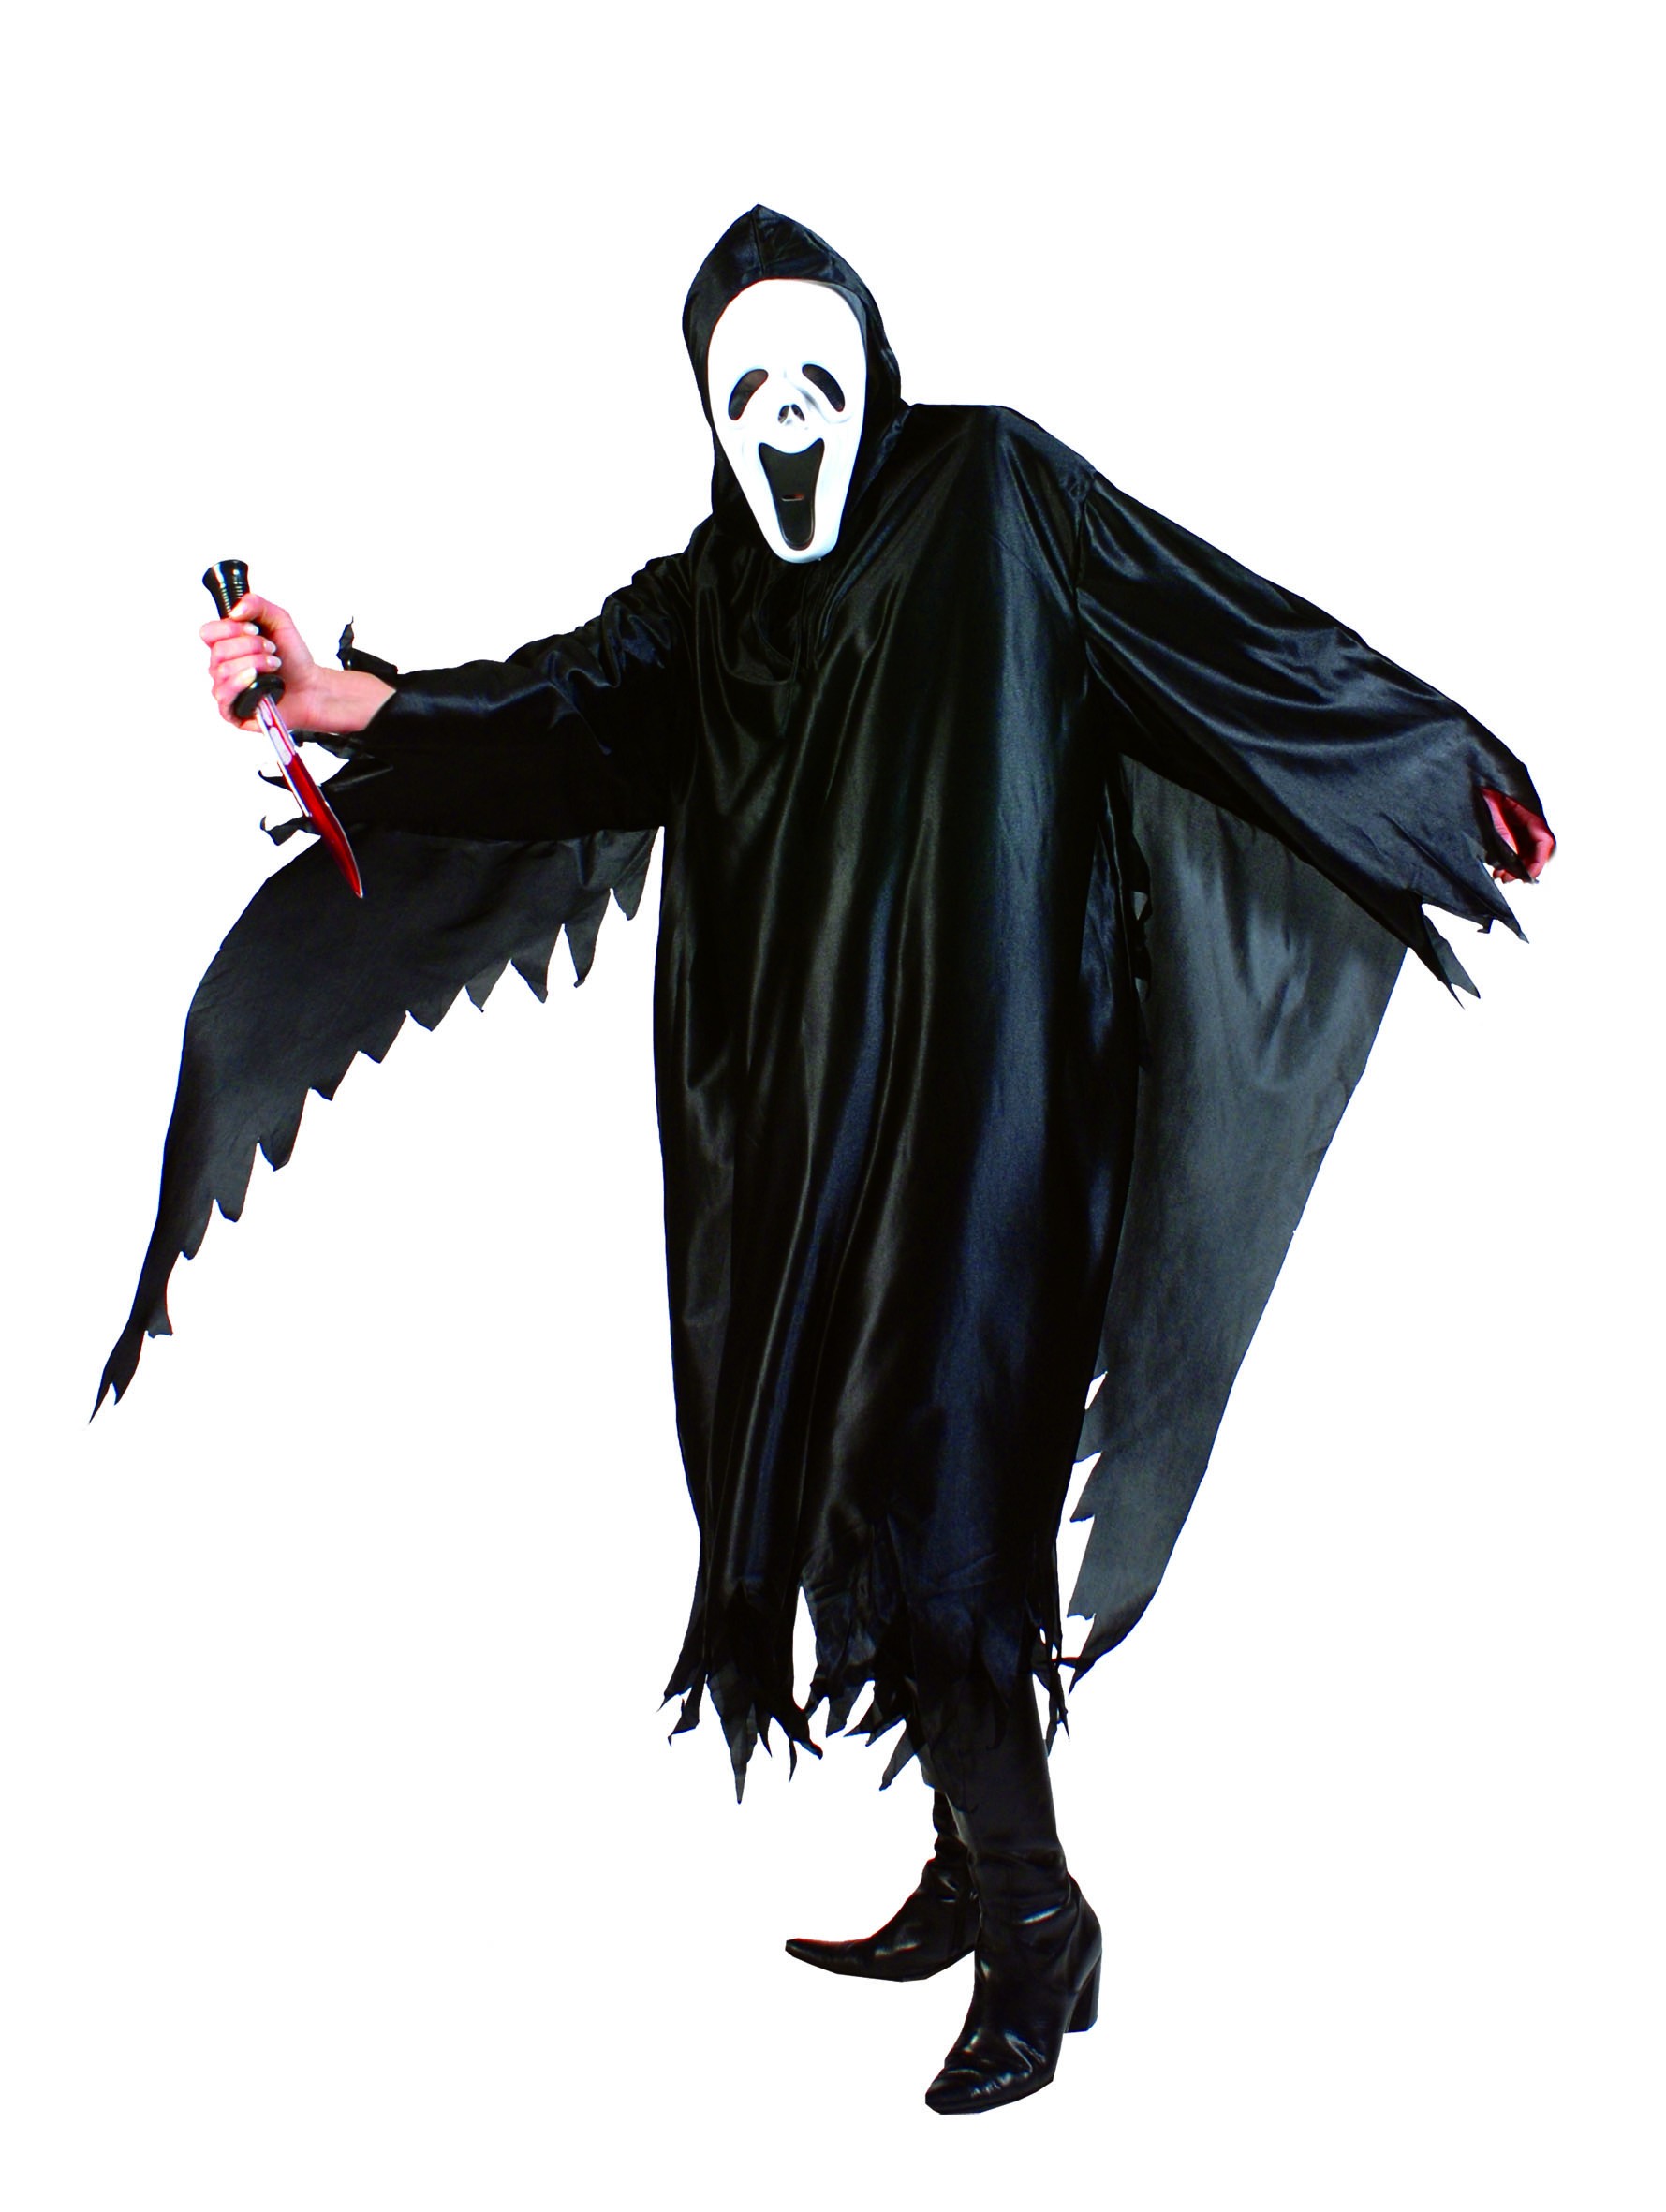 Costume Hommes Femmes Unisexe Halloween Fantôme Spectre tueur en série T M/L m-0001 